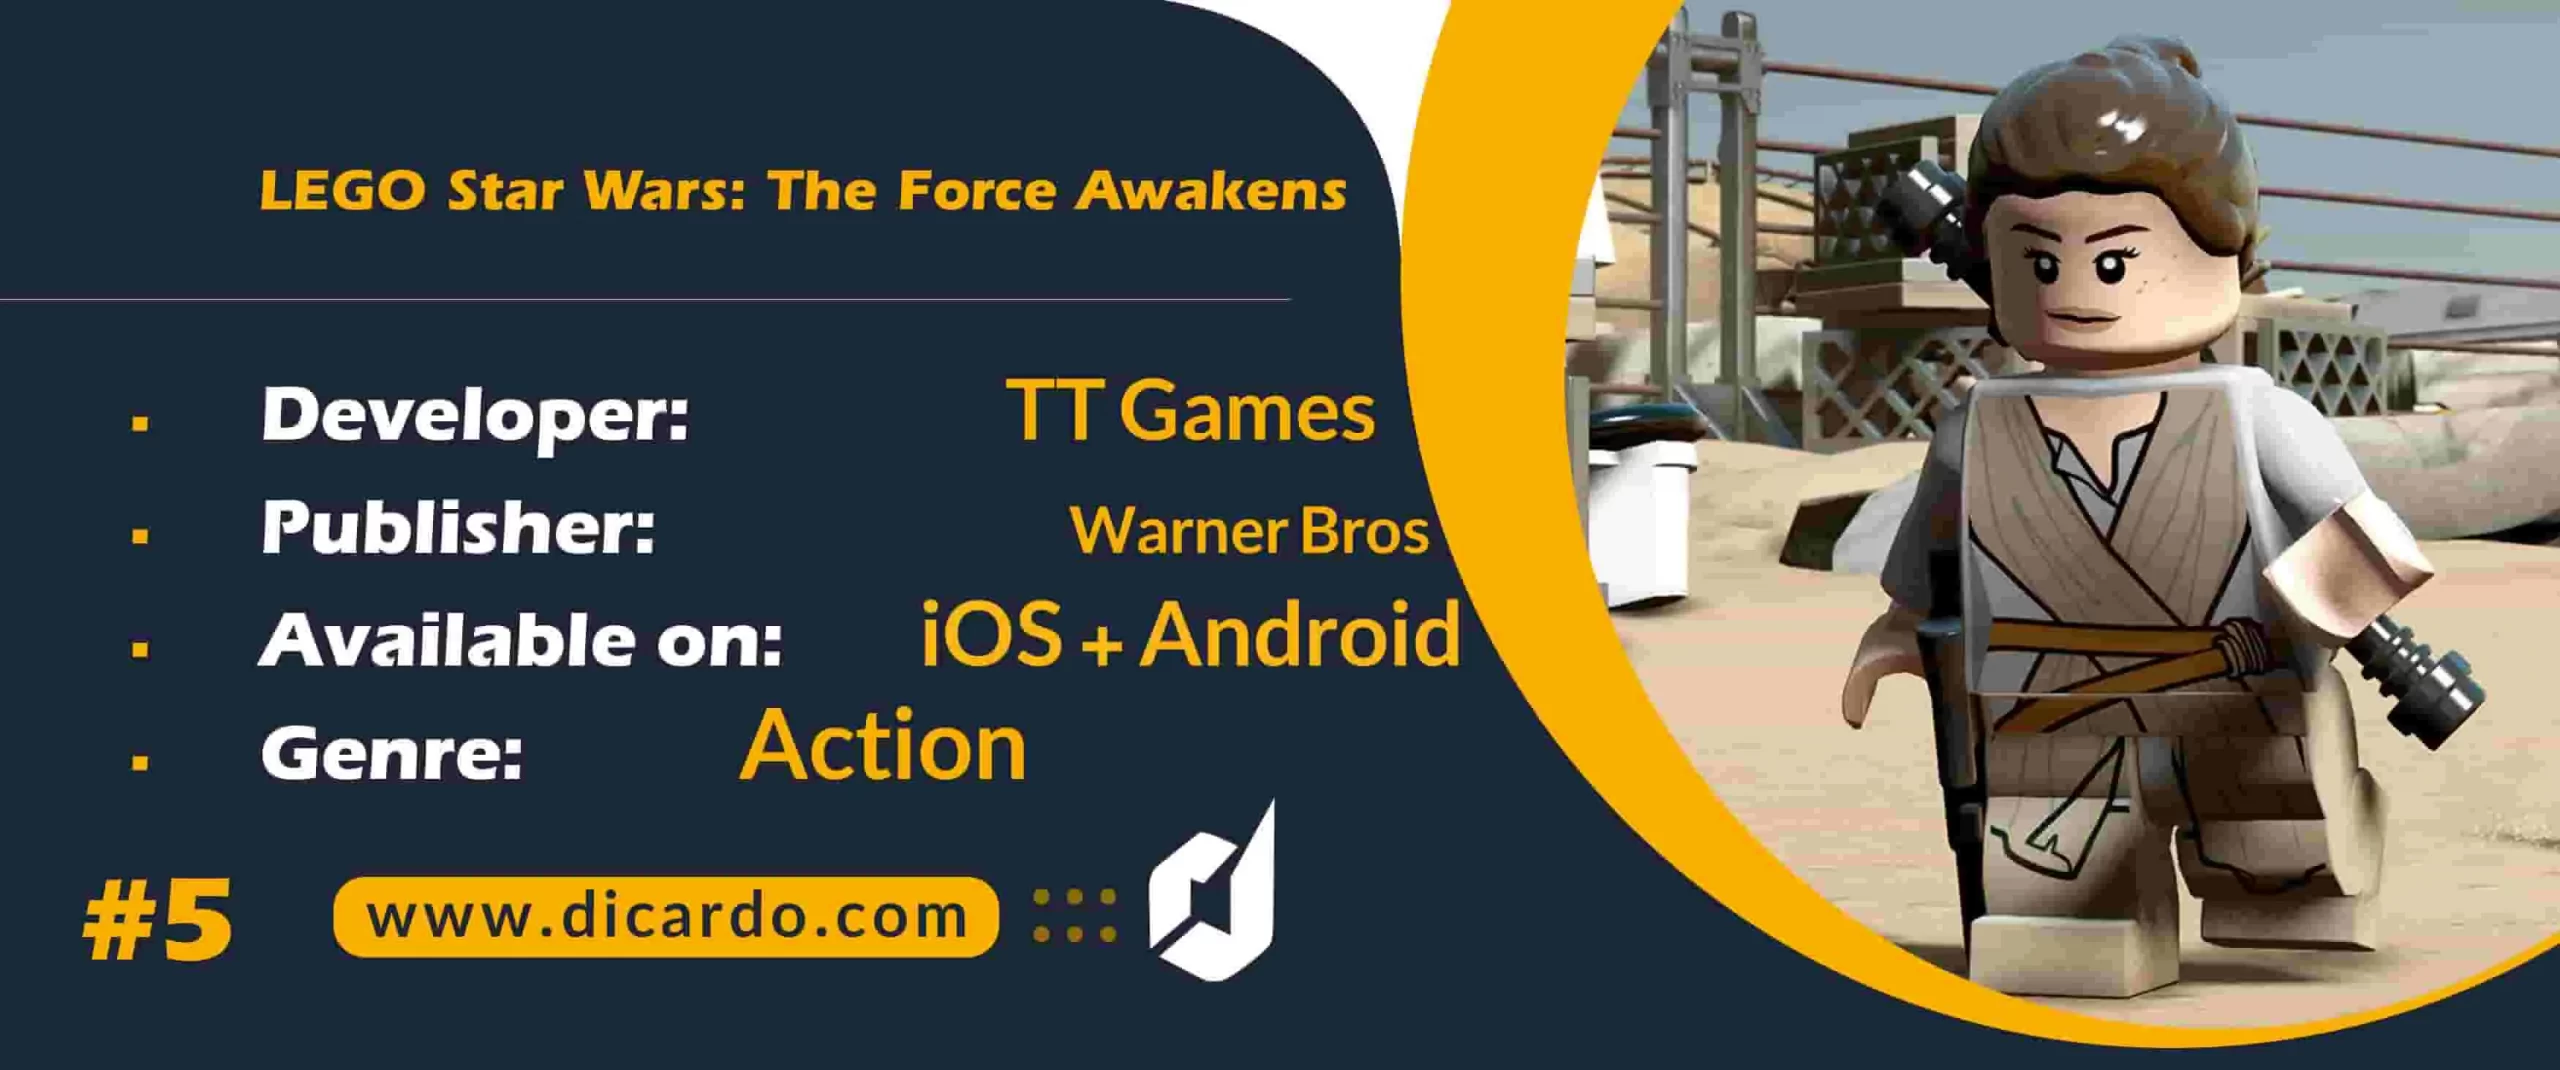 #5 لگو استار وارز: د فورس اویکنز LEGO Star Wars: The Force Awakens آخرین مورد از بهترین بازیهای جنگ ستارگان iOS